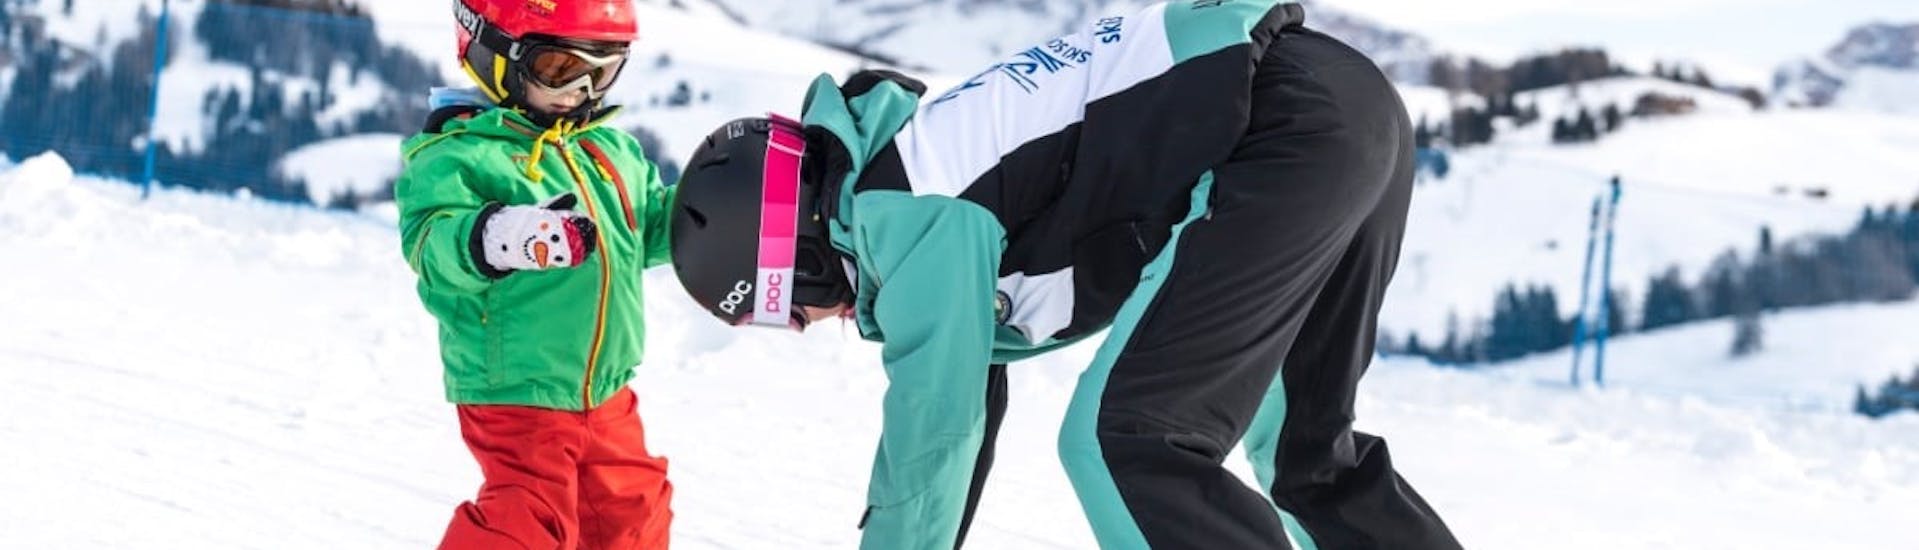 Skileraar die kinderen in de sneeuwploeg zet tijdens de privé-skilessen voor kinderen van alle niveaus met skischool Schlern 3000.